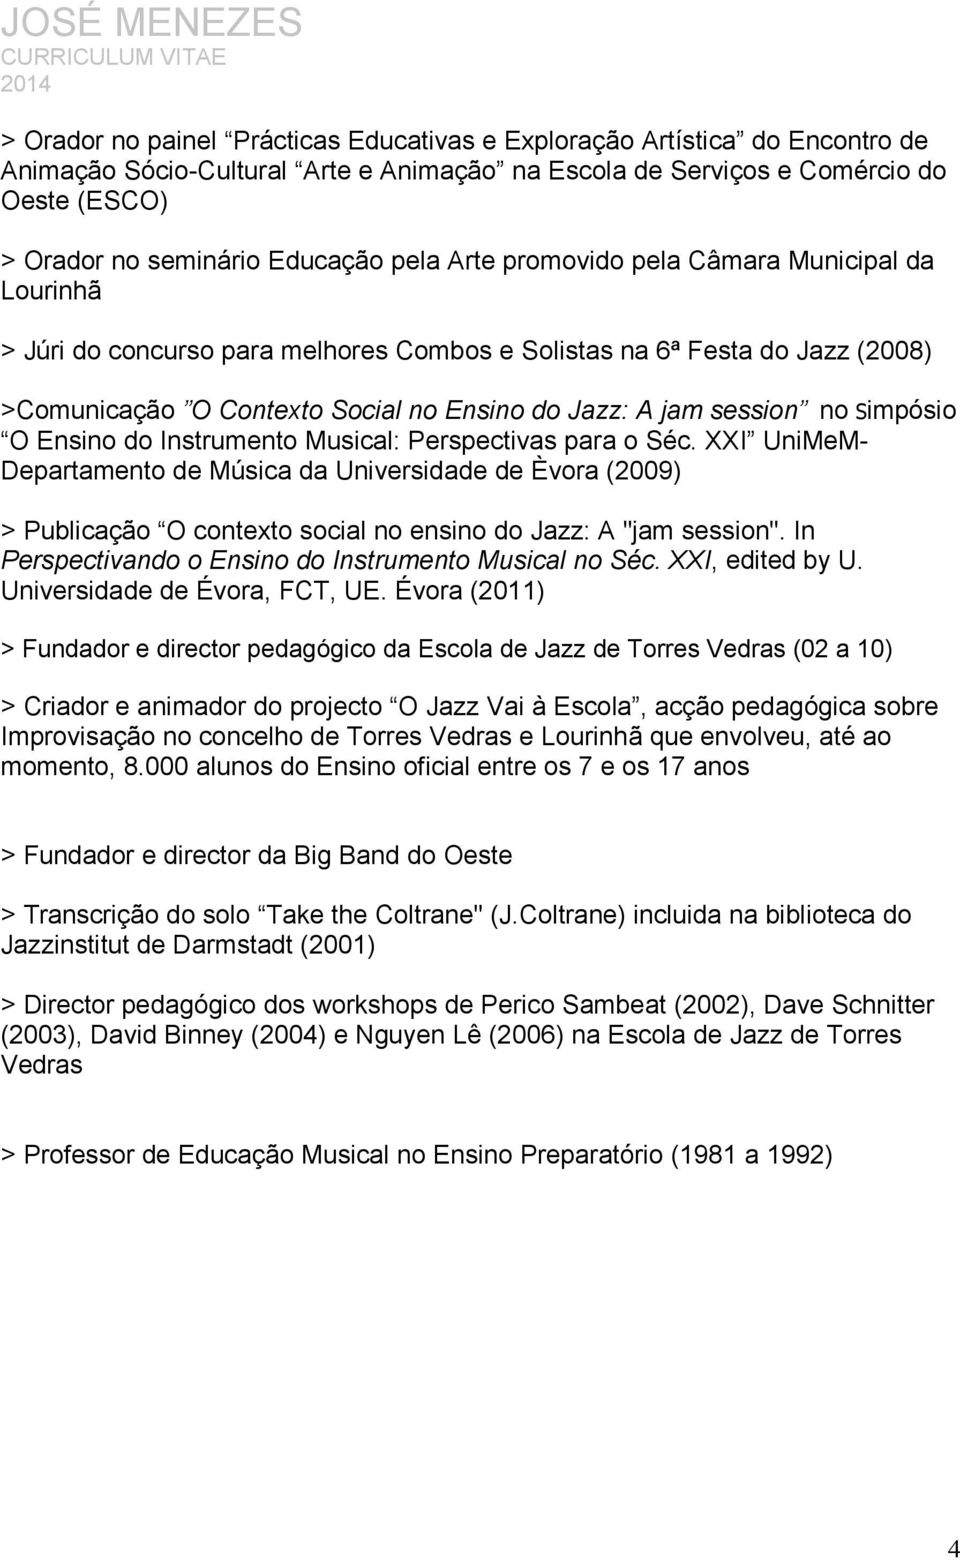 Simpósio O Ensino do Instrumento Musical: Perspectivas para o Séc. XXI UniMeM- Departamento de Música da Universidade de Èvora (2009) > Publicação O contexto social no ensino do Jazz: A "jam session".